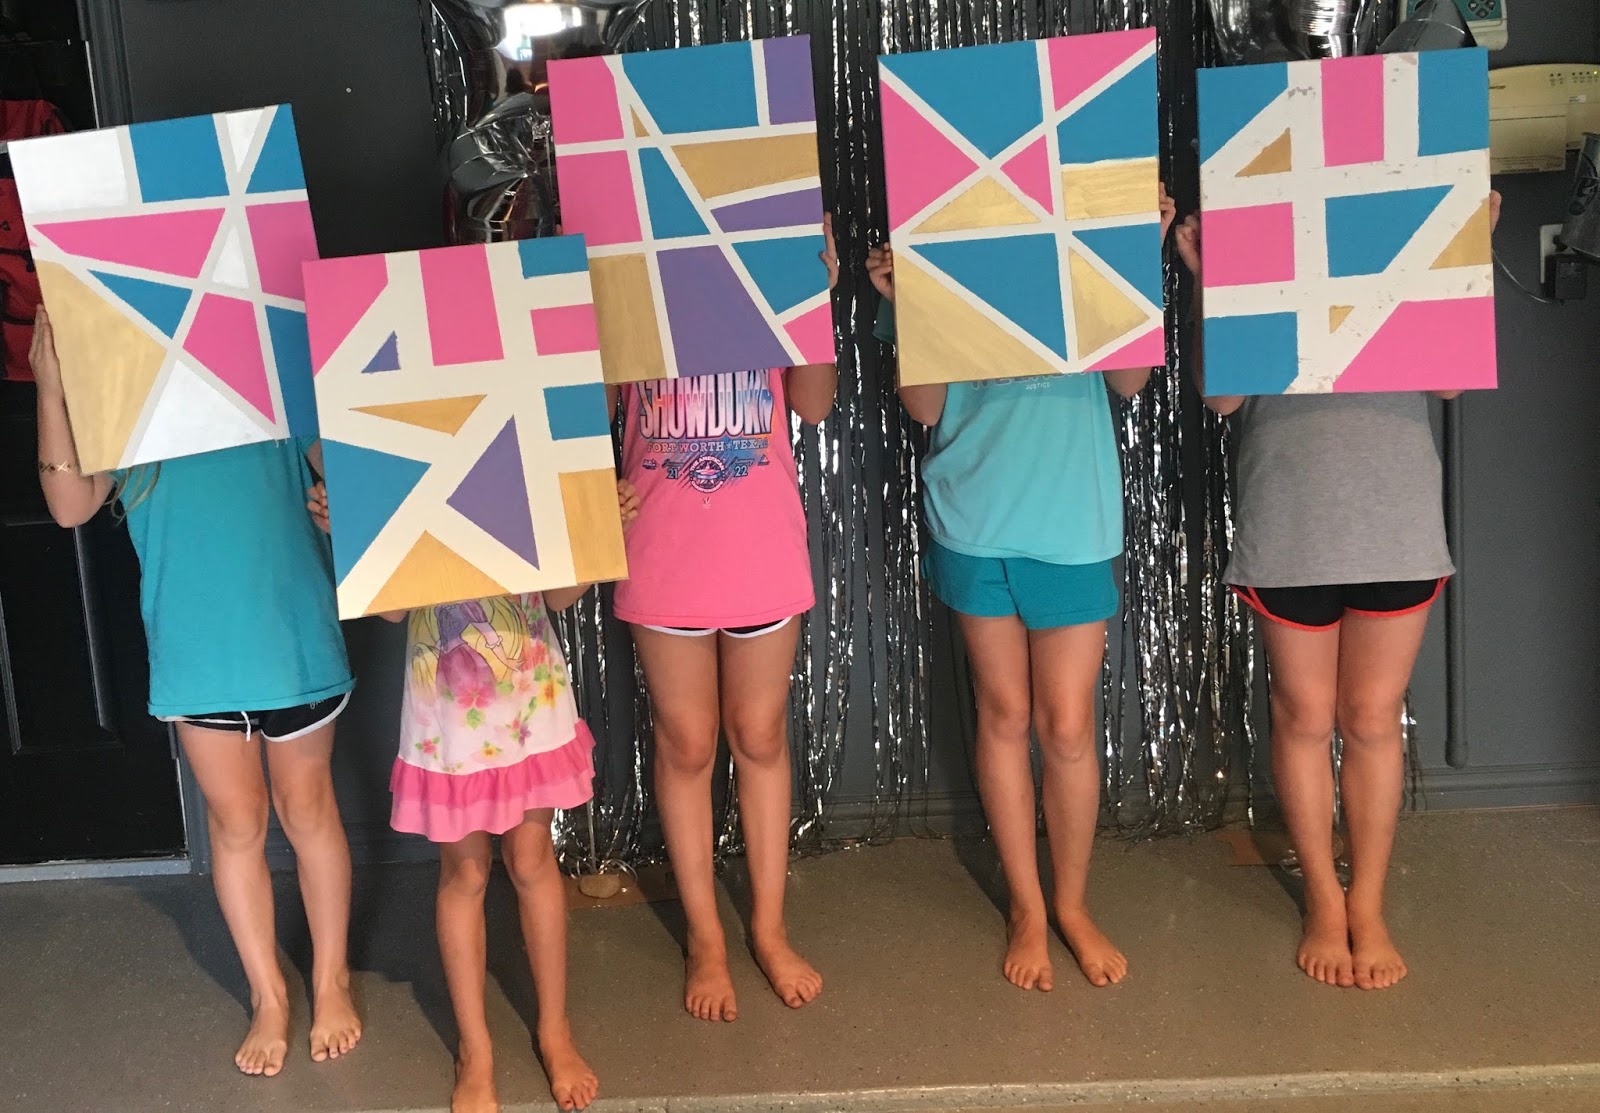 tanker helder Grazen Crafty Texas Girls: DIY Abstract Art (Using Tape, Paint & a Canvas)